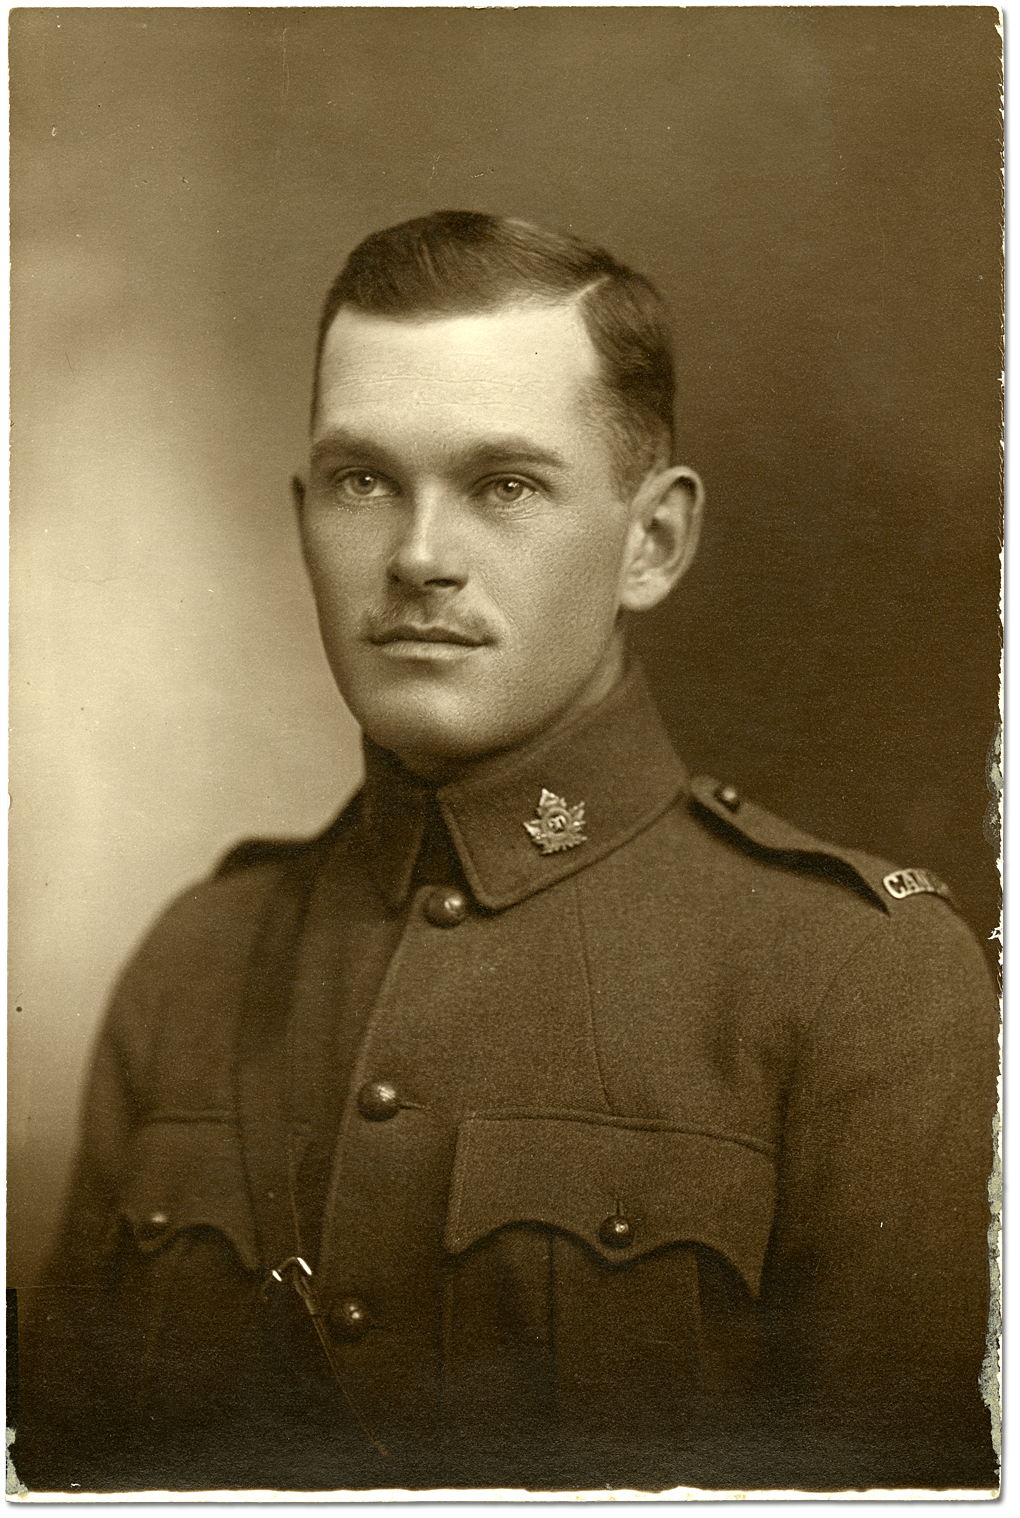 Harry Mason en uniforme militaire, [vers 1914-1917]